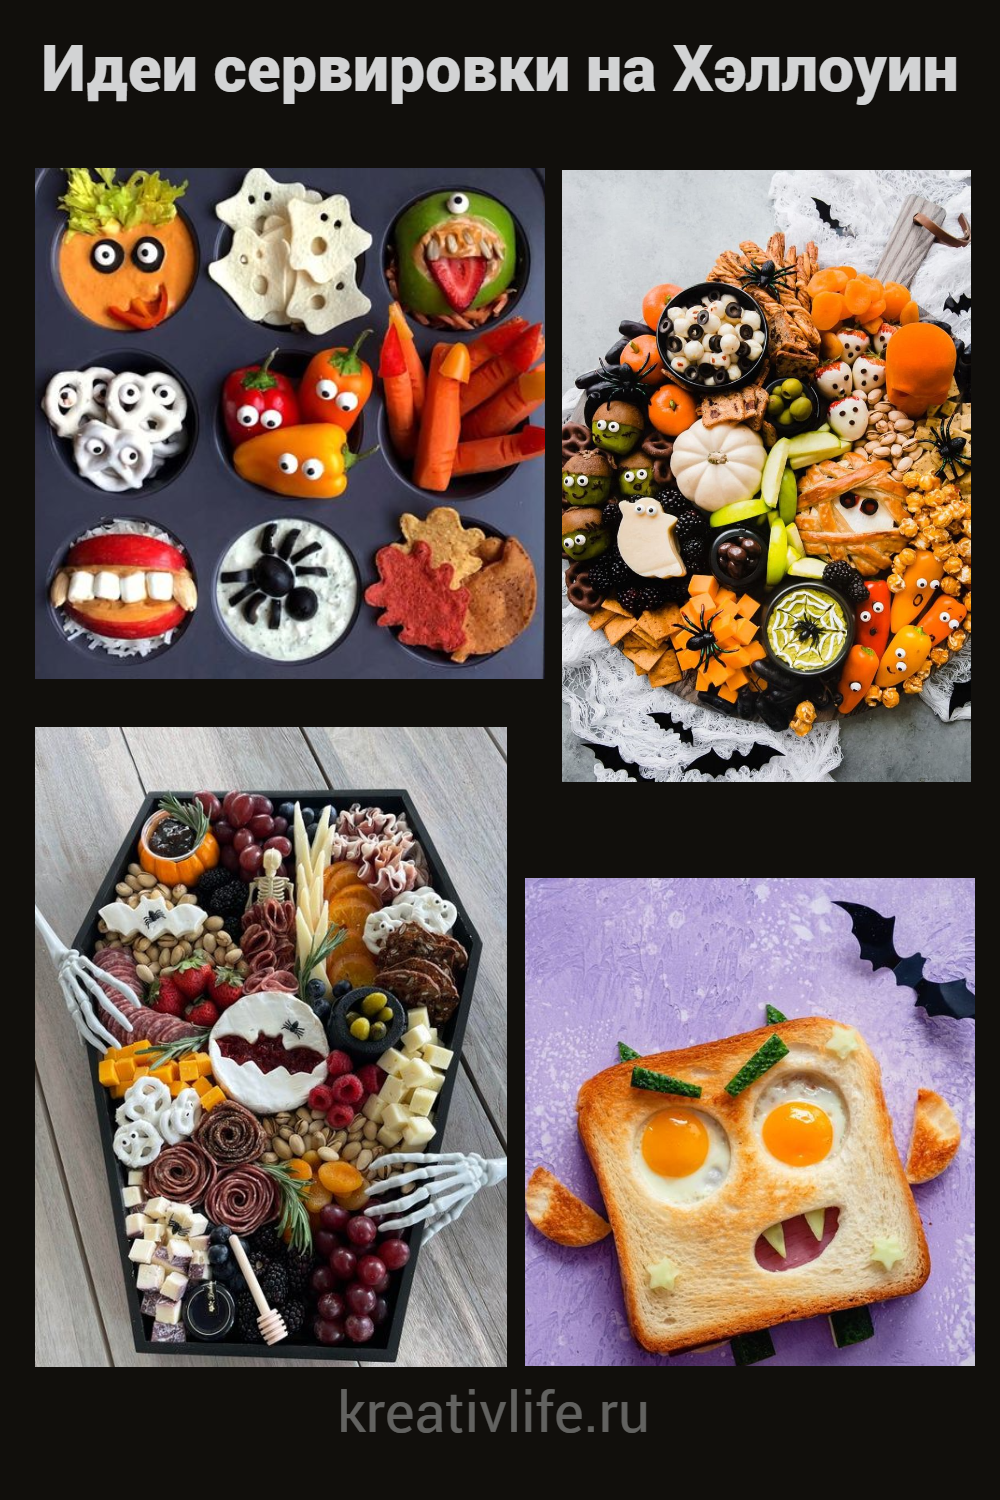 Оформление еды и сервировка блюд на Хэллоуин 